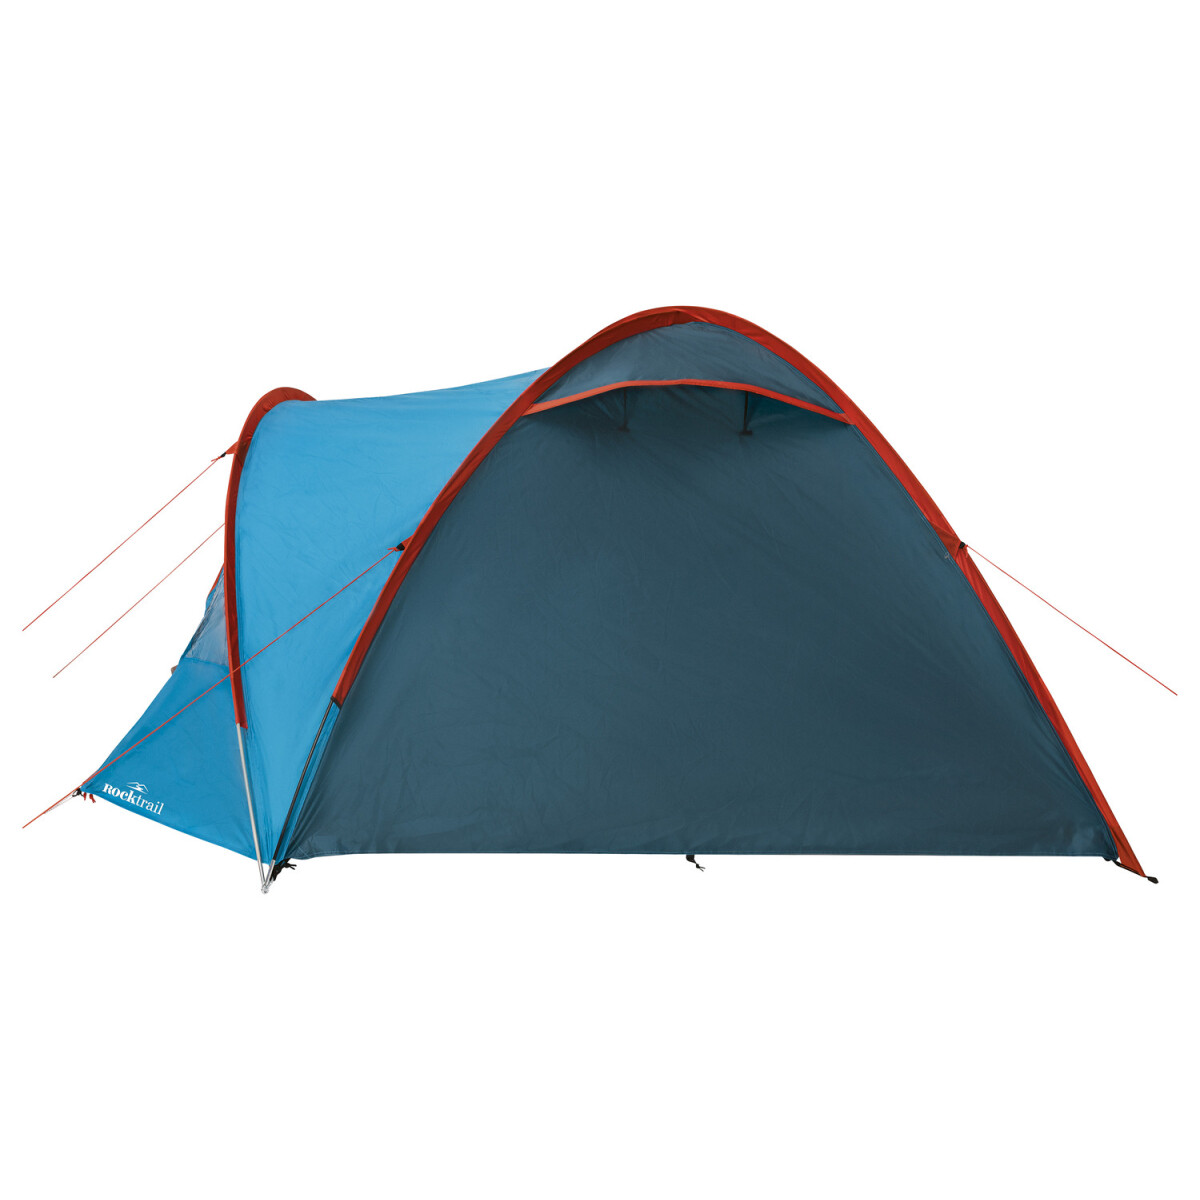 Rocktrail Campingzelt für 4 Personen, mit Doppeldach - B-Ware, 34,99 €